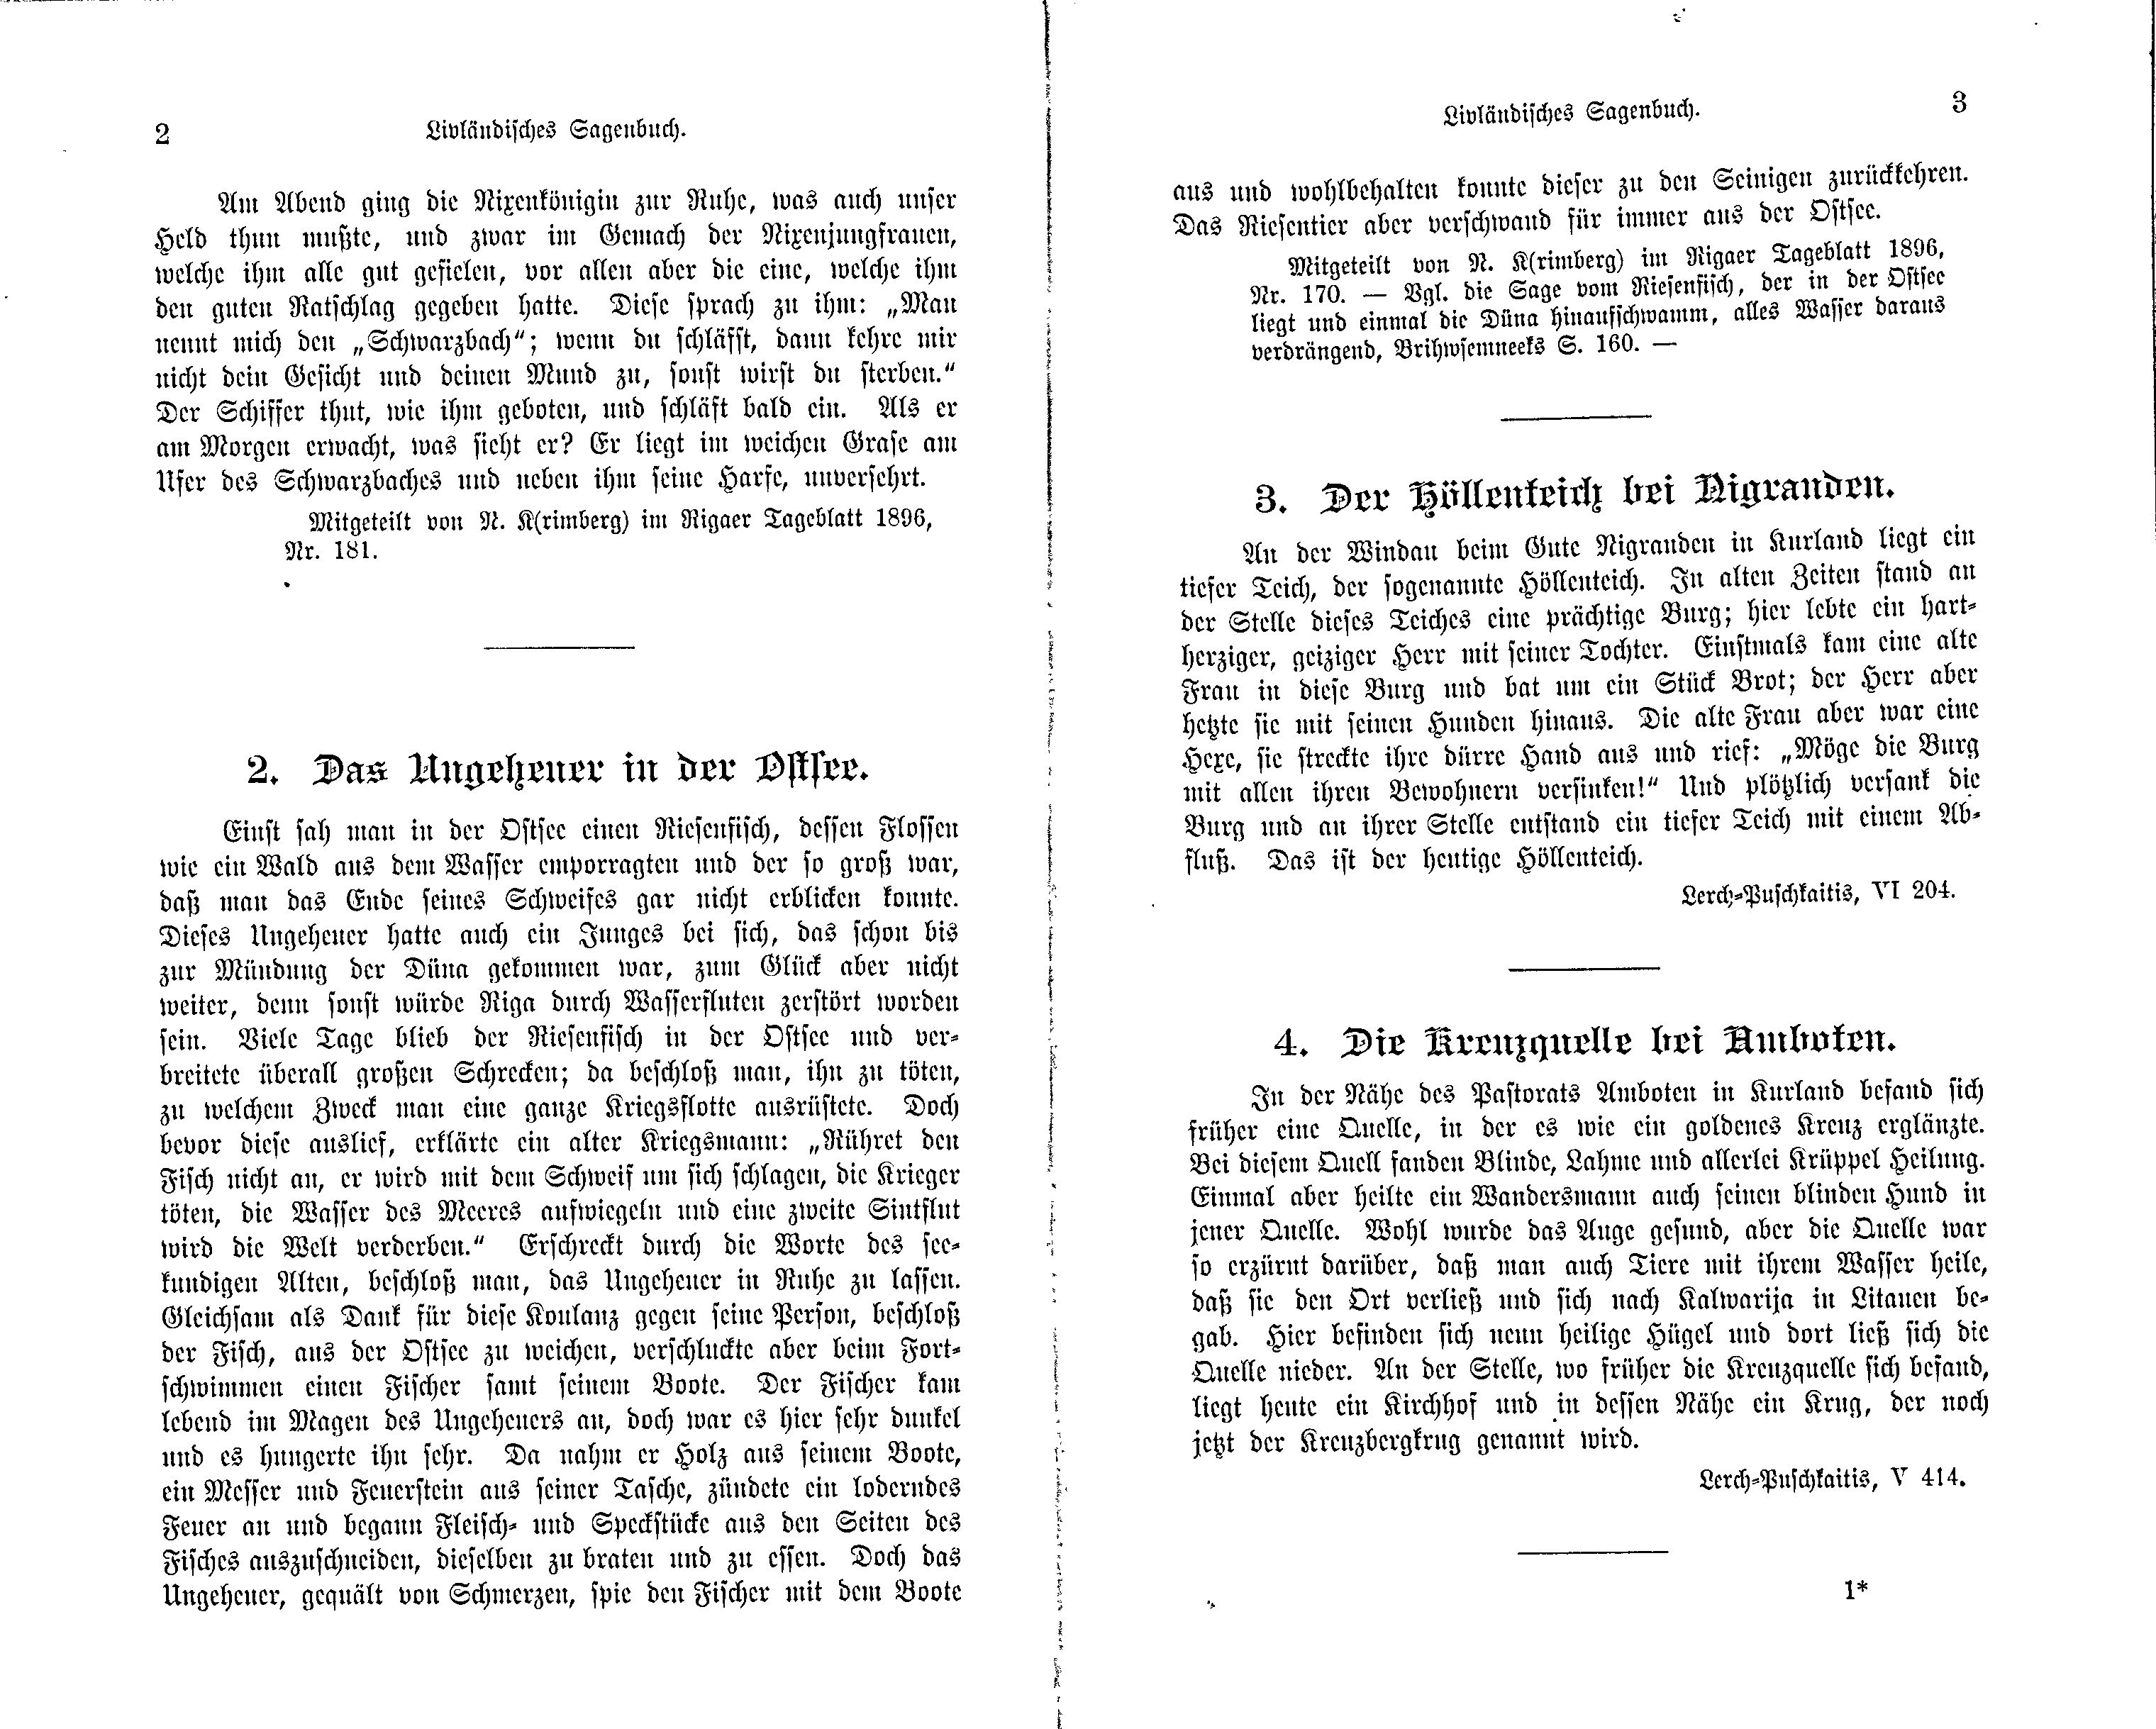 Der Höllenteich bei Nigranden (1897) | 1. (2-3) Haupttext